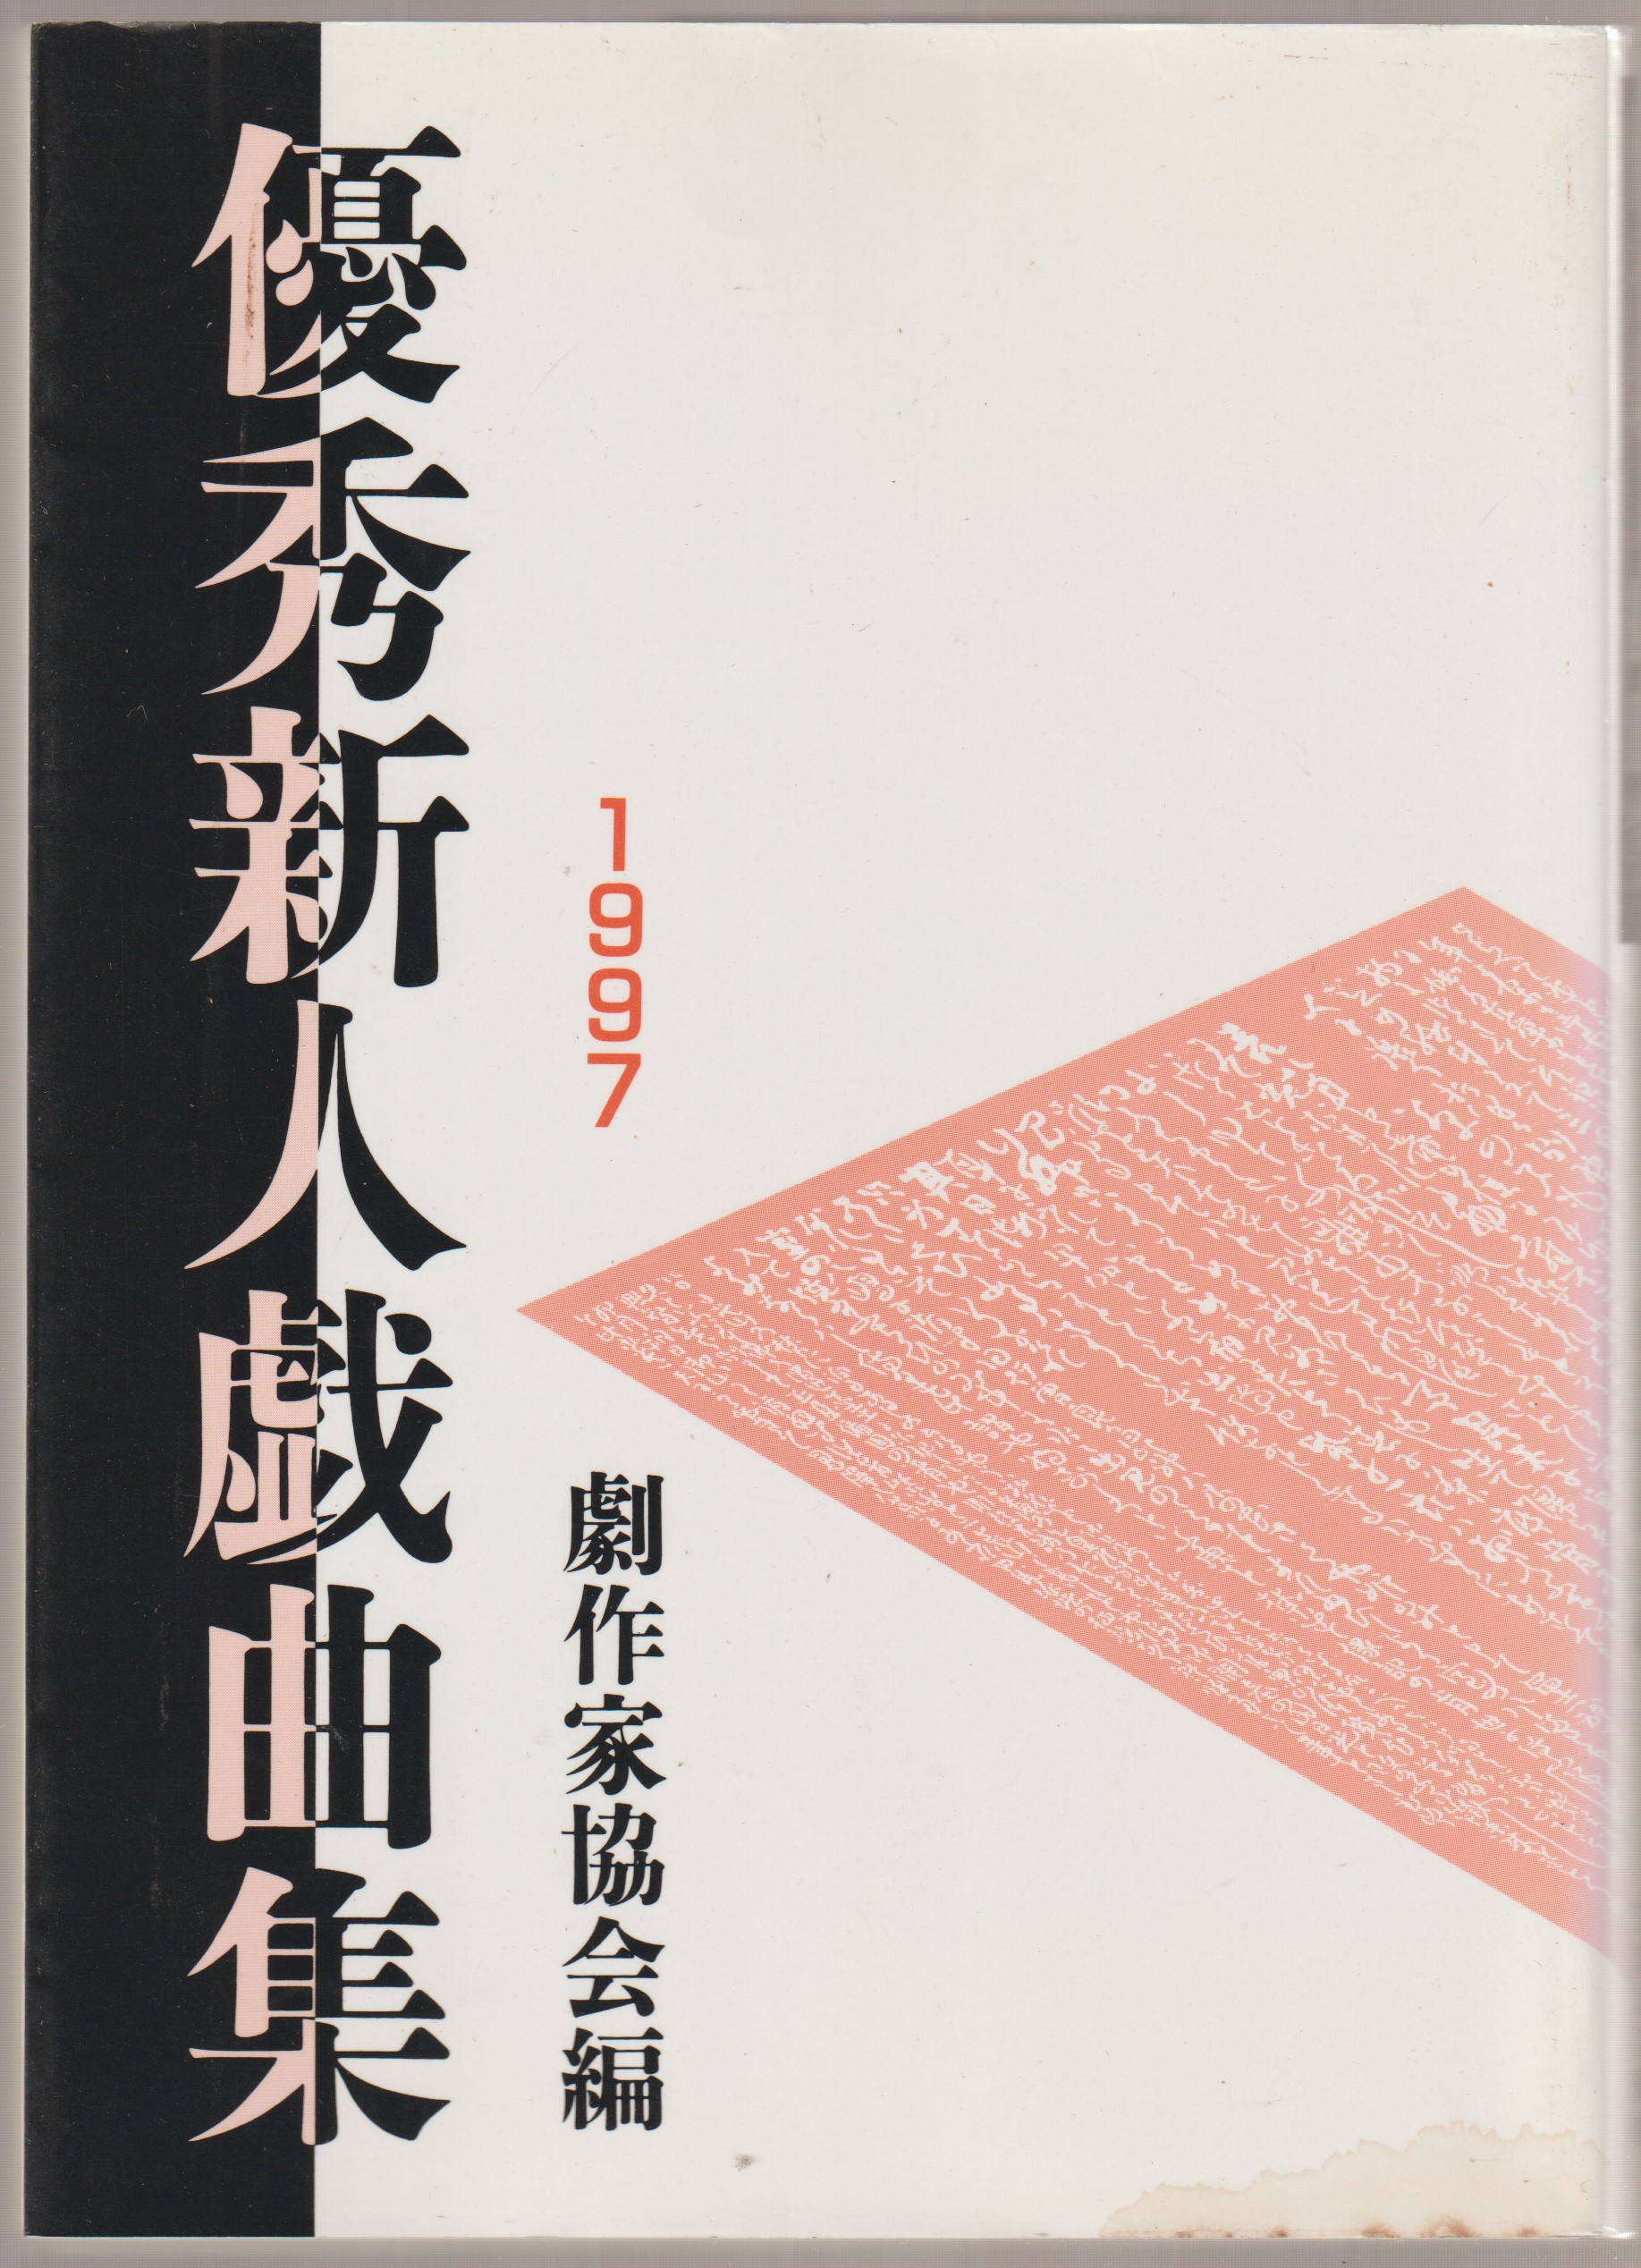 優秀新人戯曲集, 1997